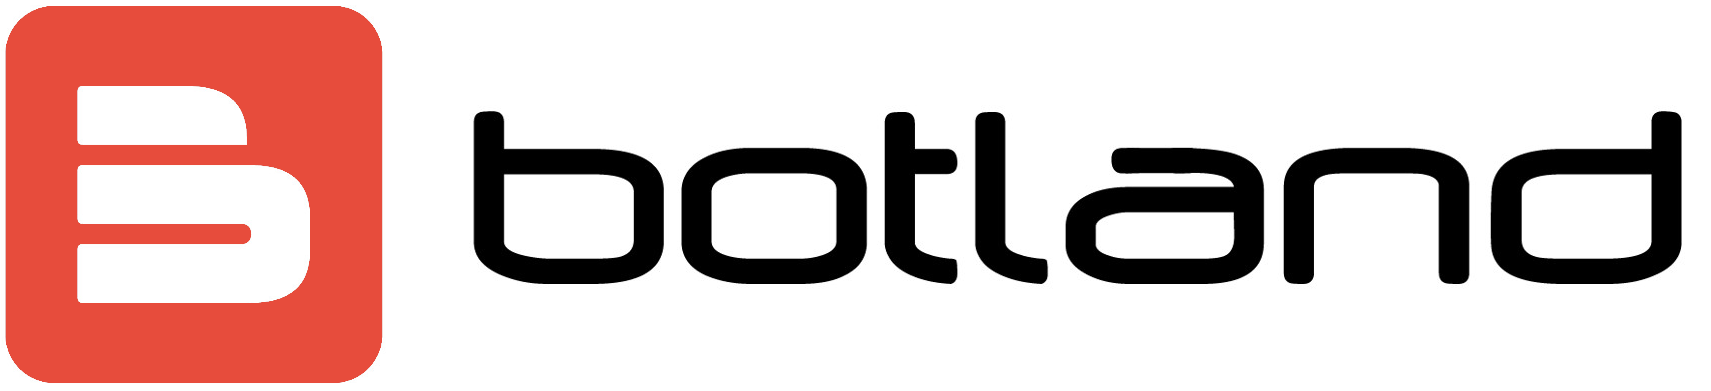 logo botland